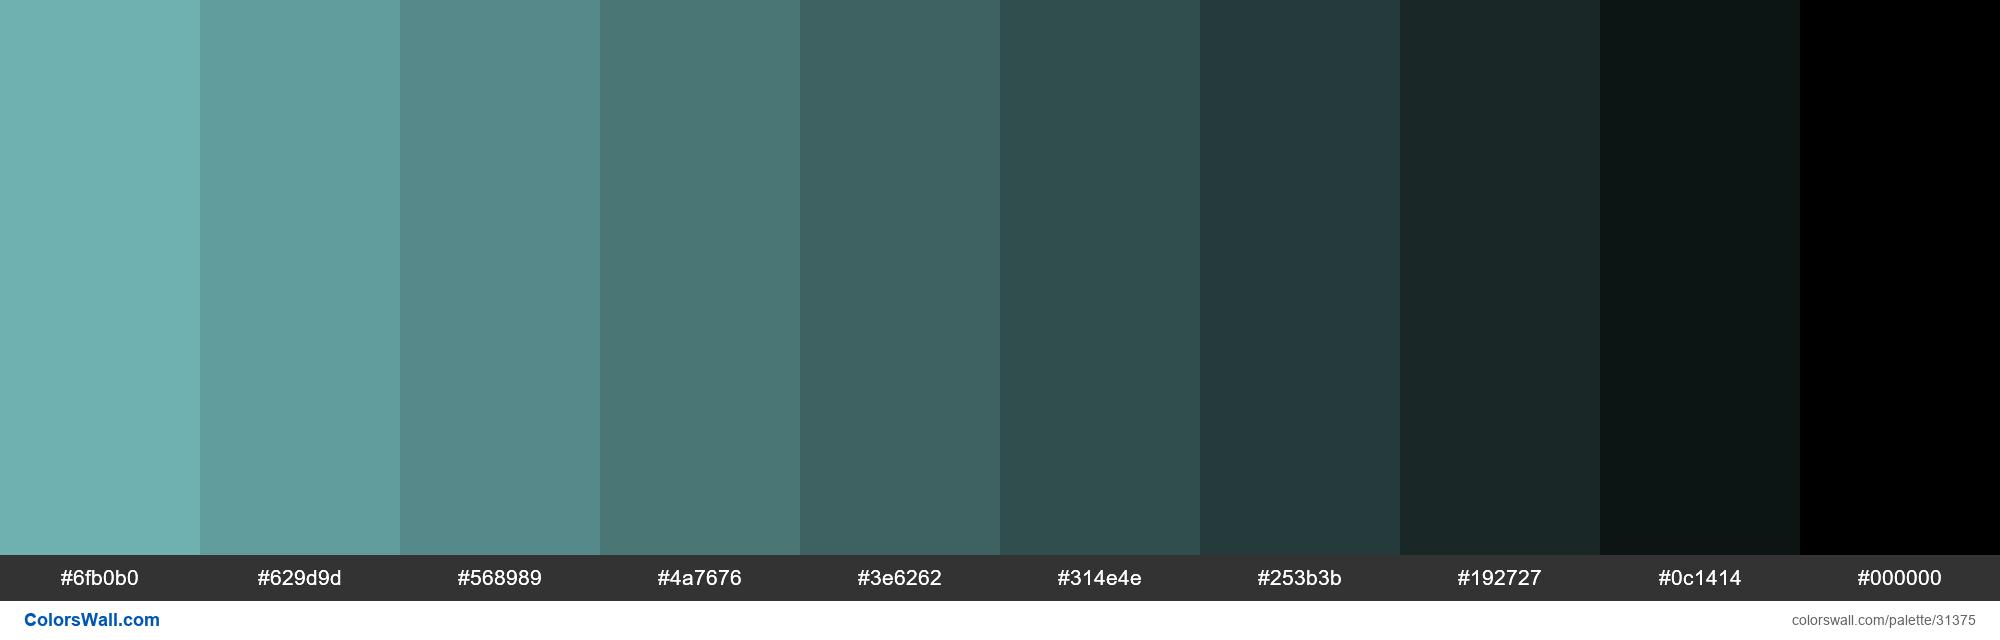 https://colorswall.com/images/palettes/shades-of-pantone-14-4811-2003-aqua-sky-color-7bc4c4-hex-31375-colorswall.png